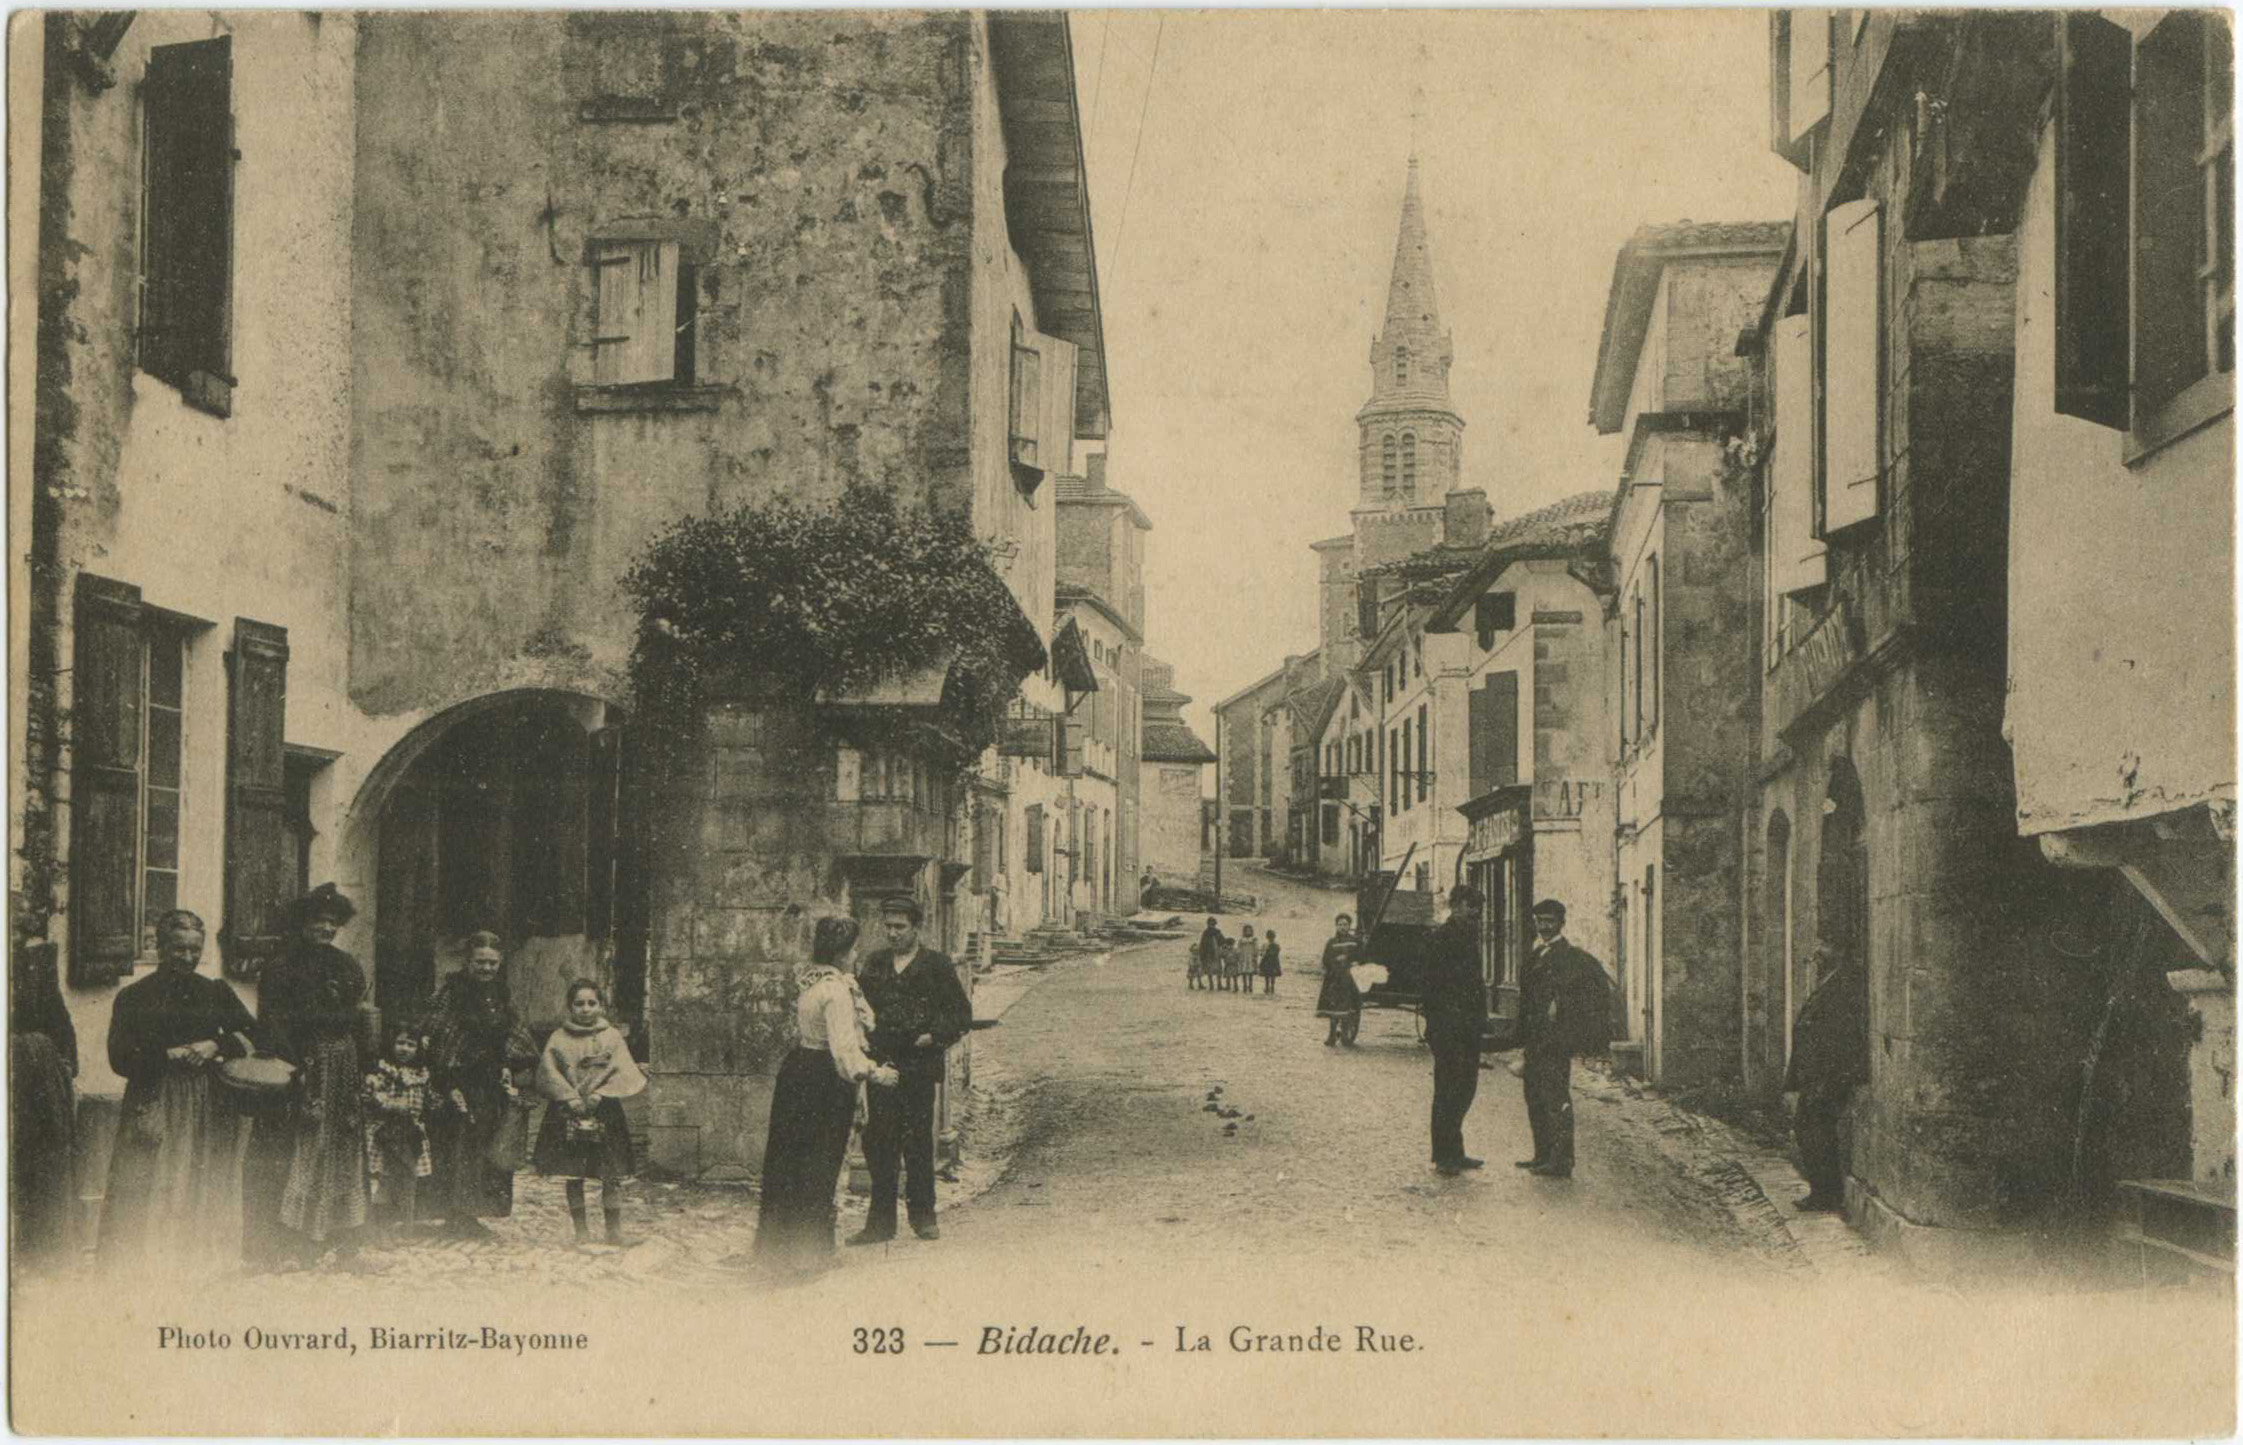 Bidache - La Grande Rue